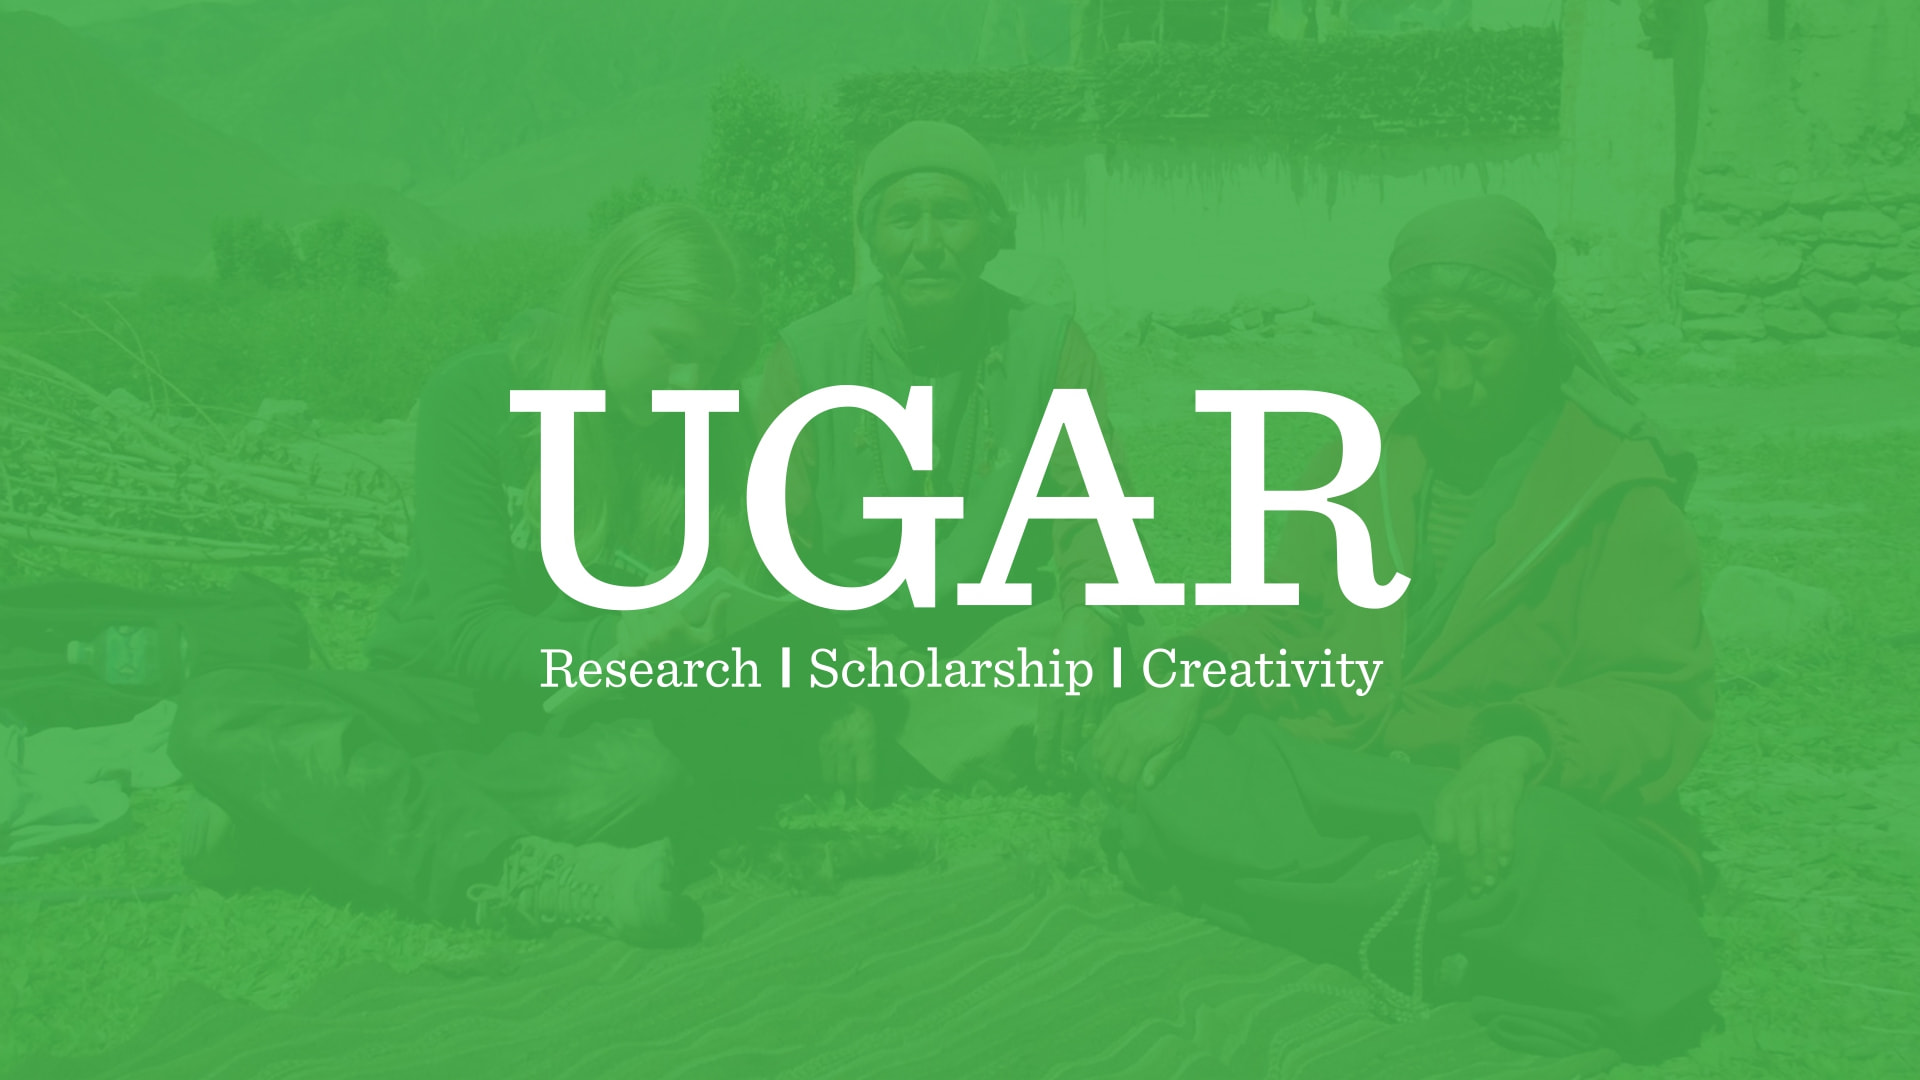 Ugar Undergraduate Advising And Research Fw